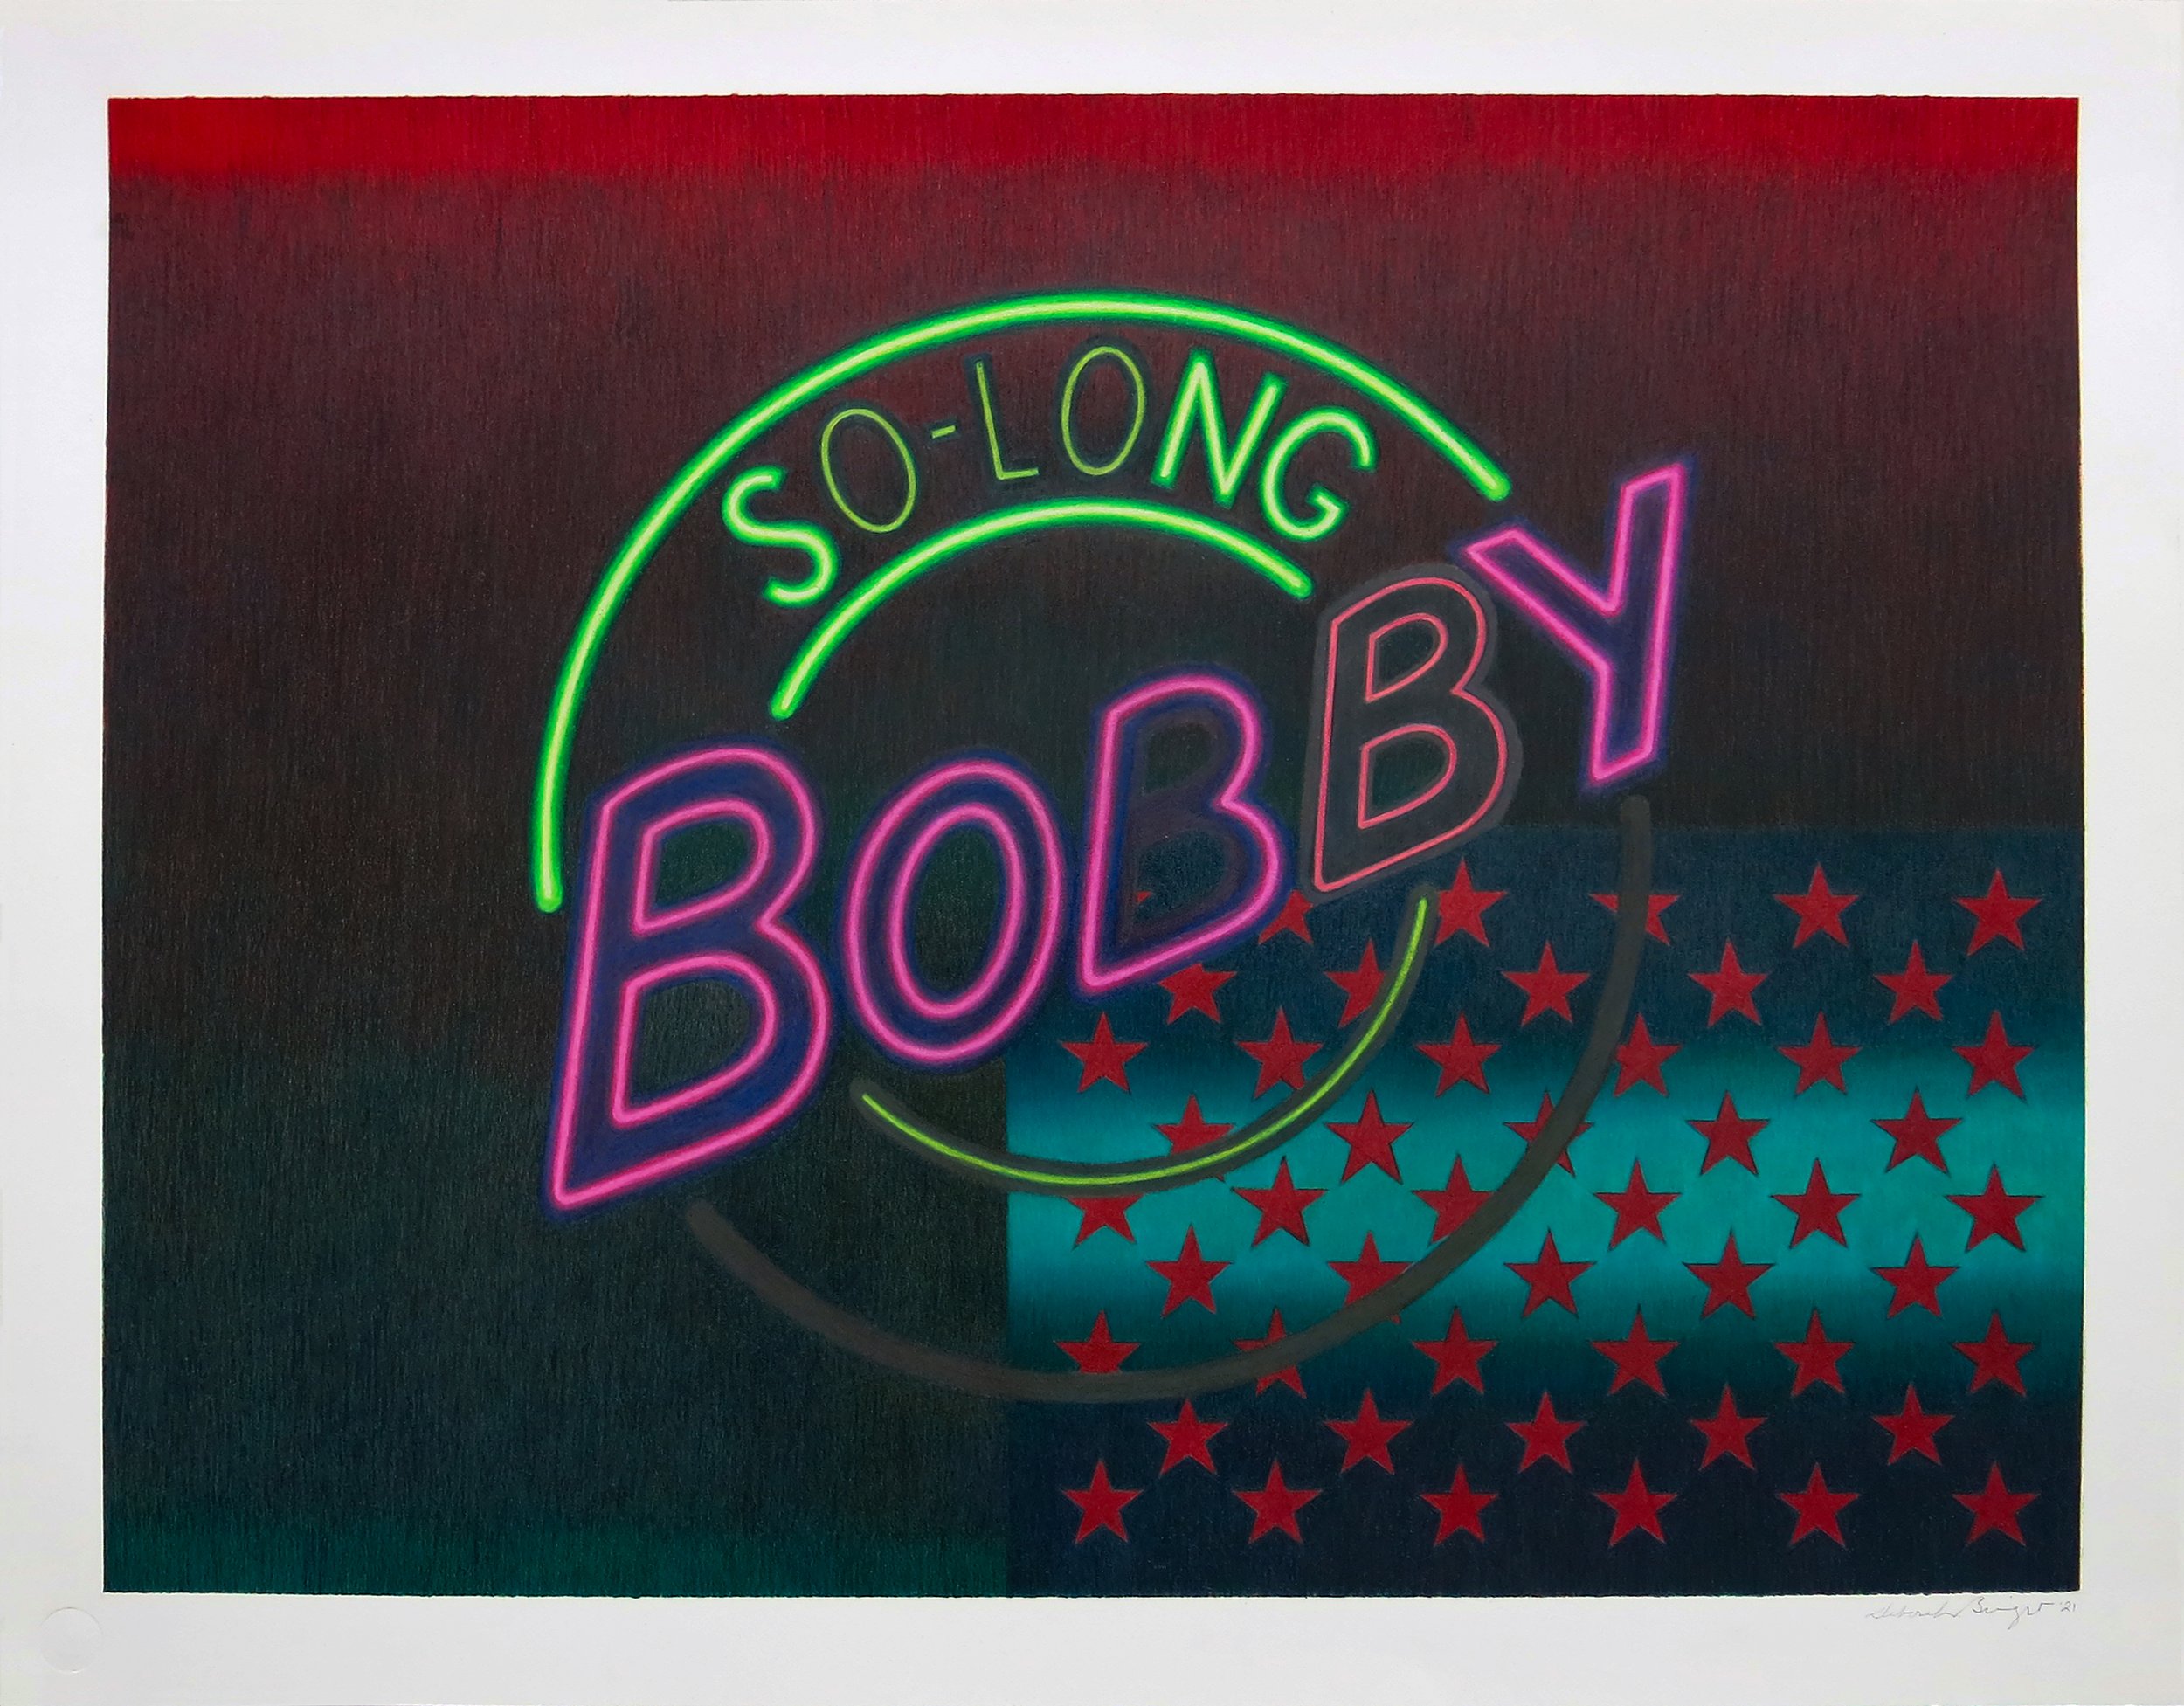 So-Long Bobby Red